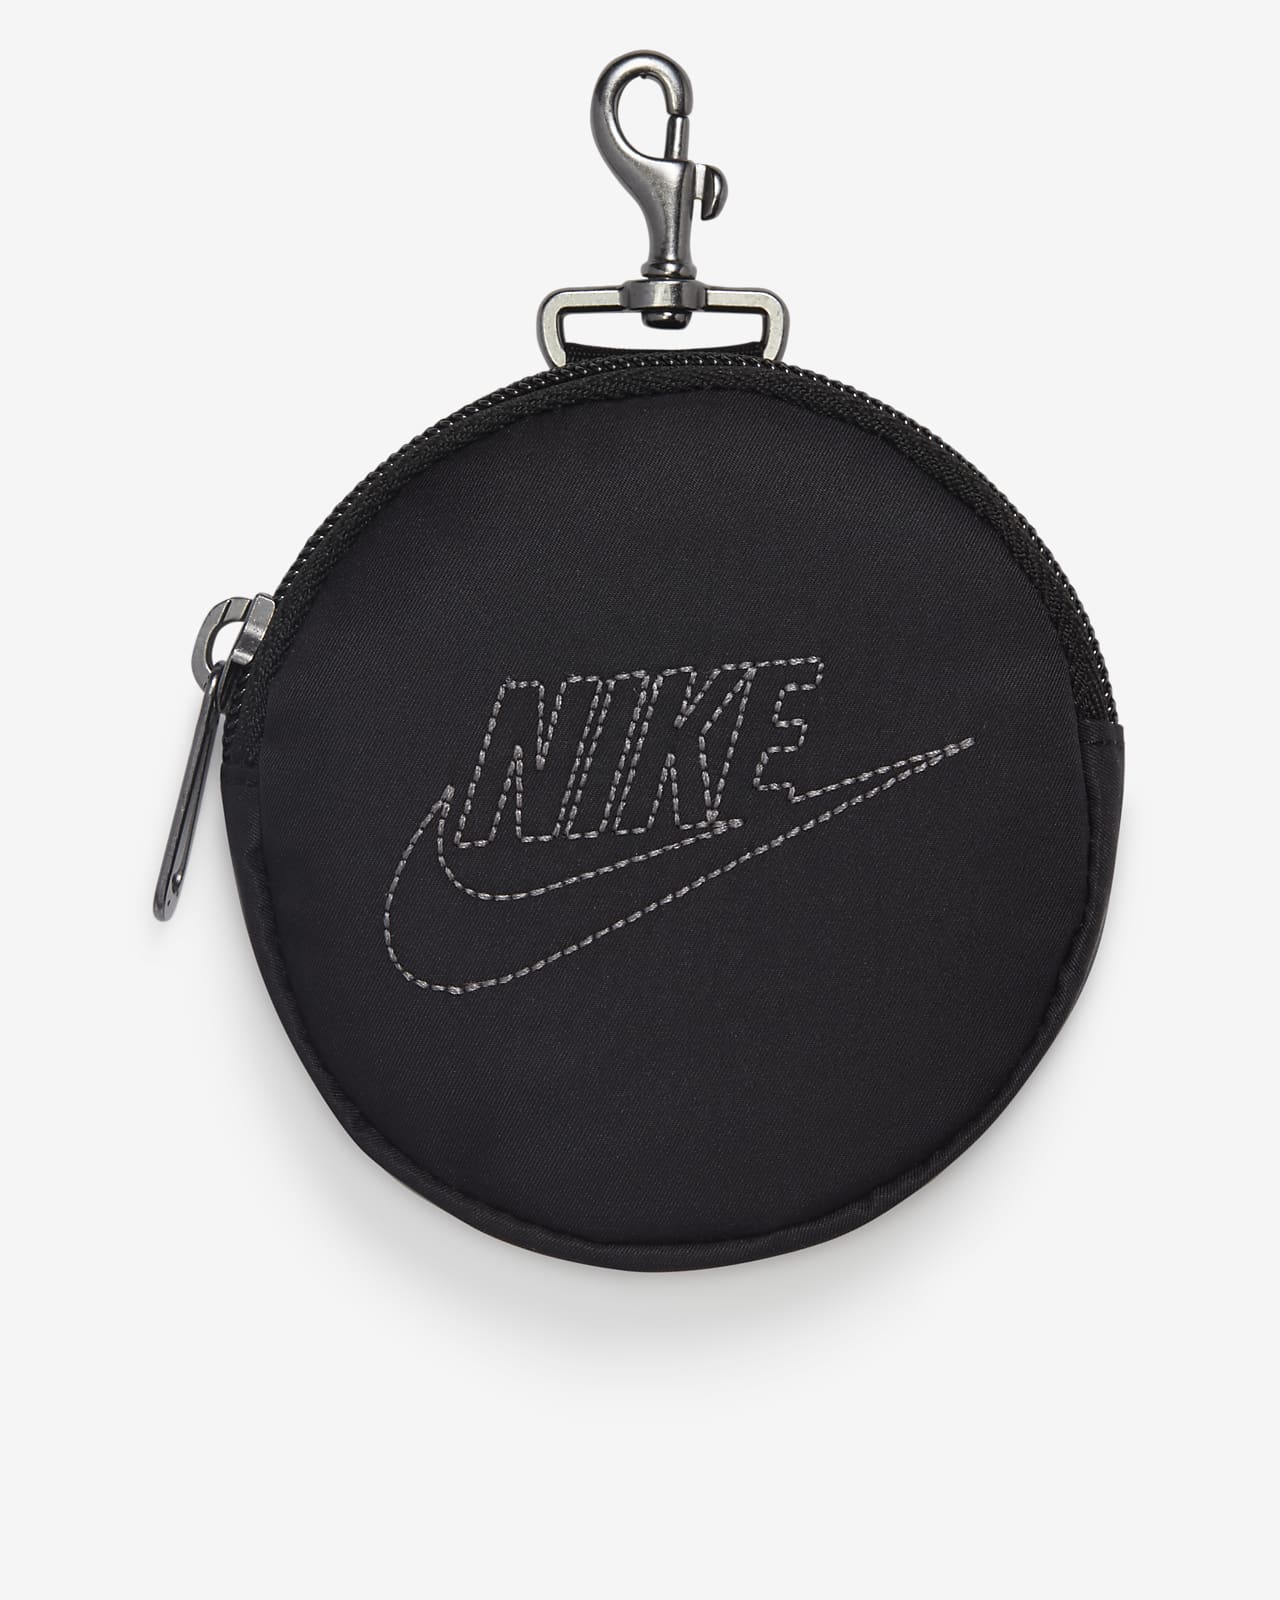 Nike Sportswear Futura Luxe Tote (10L). Nike ID